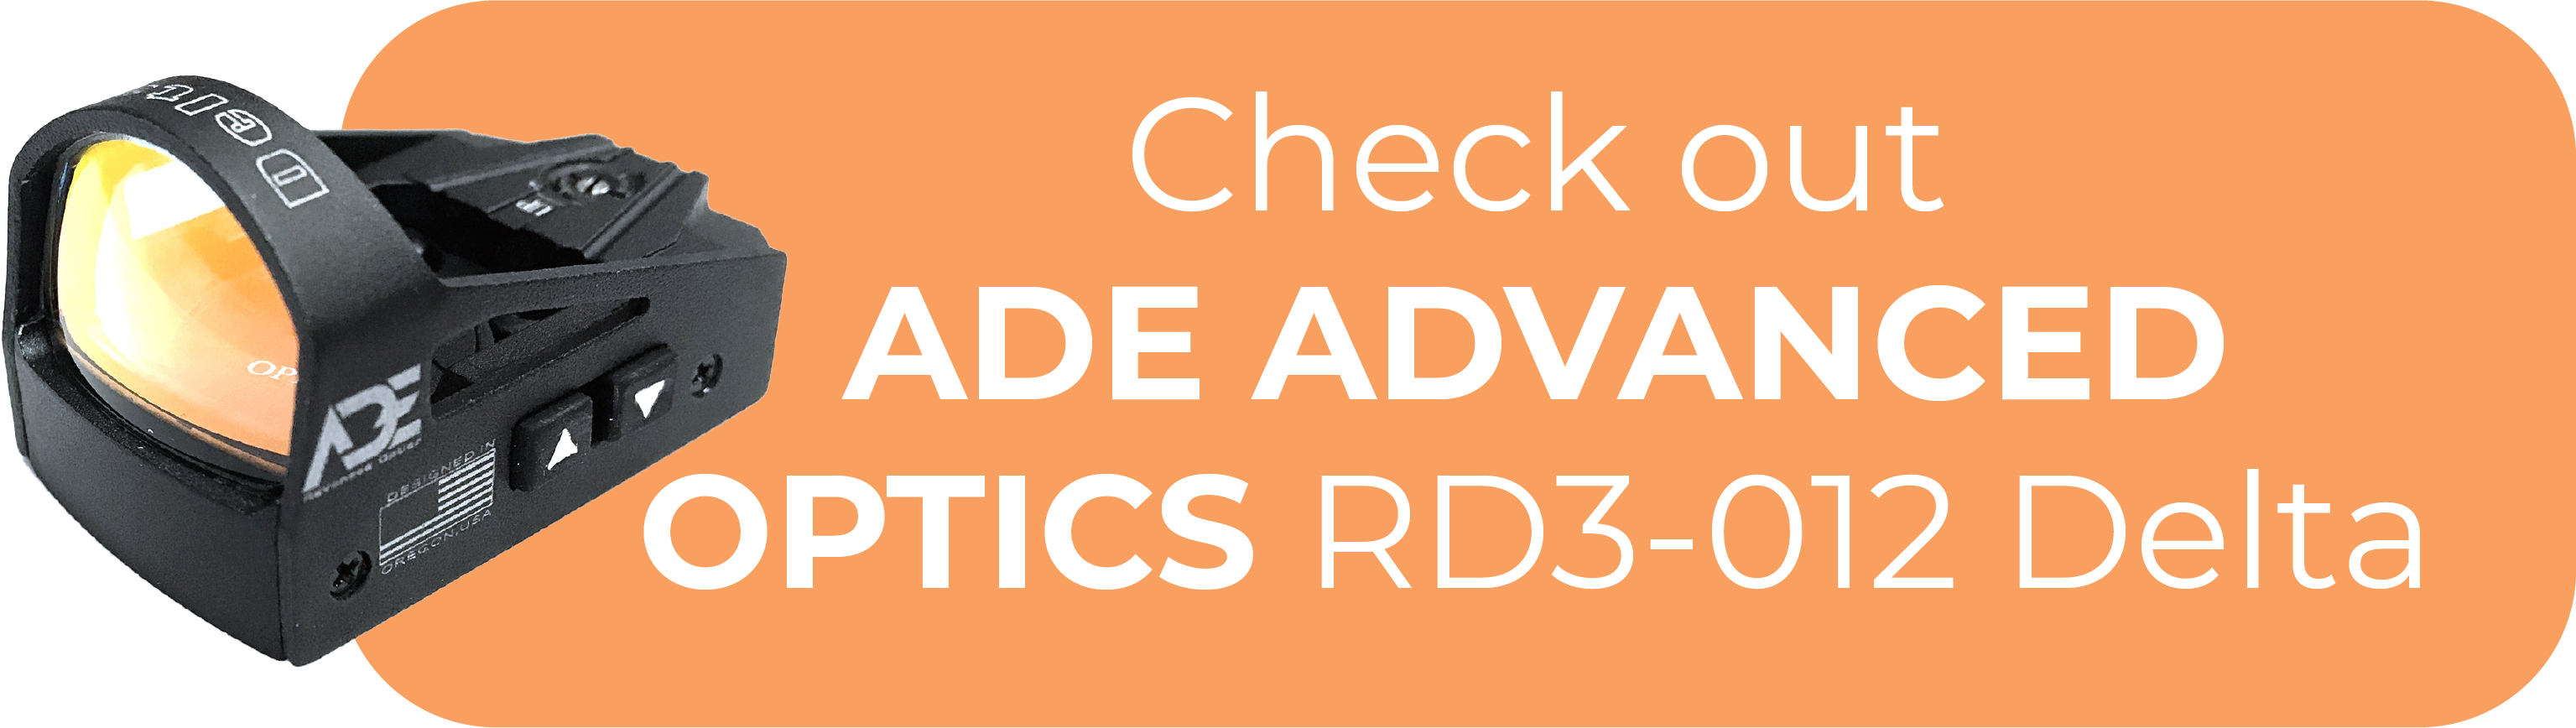 ADE Advanced Optics RD3-012 Delta Footprint